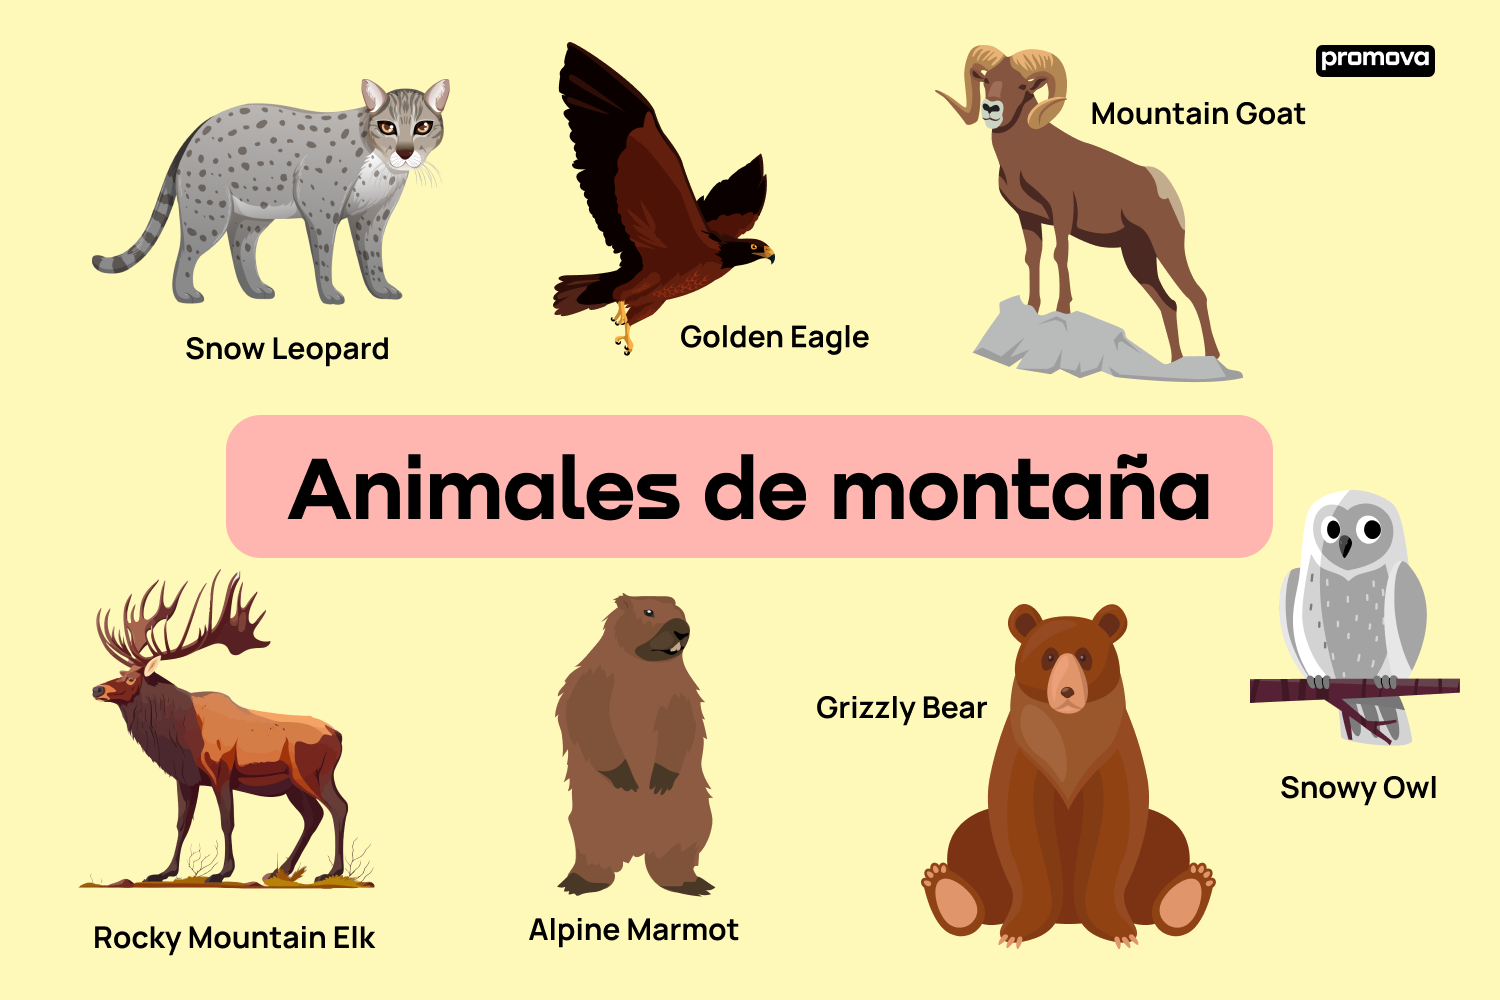 Aprende sobre los animales de montaña con esta guía detallada